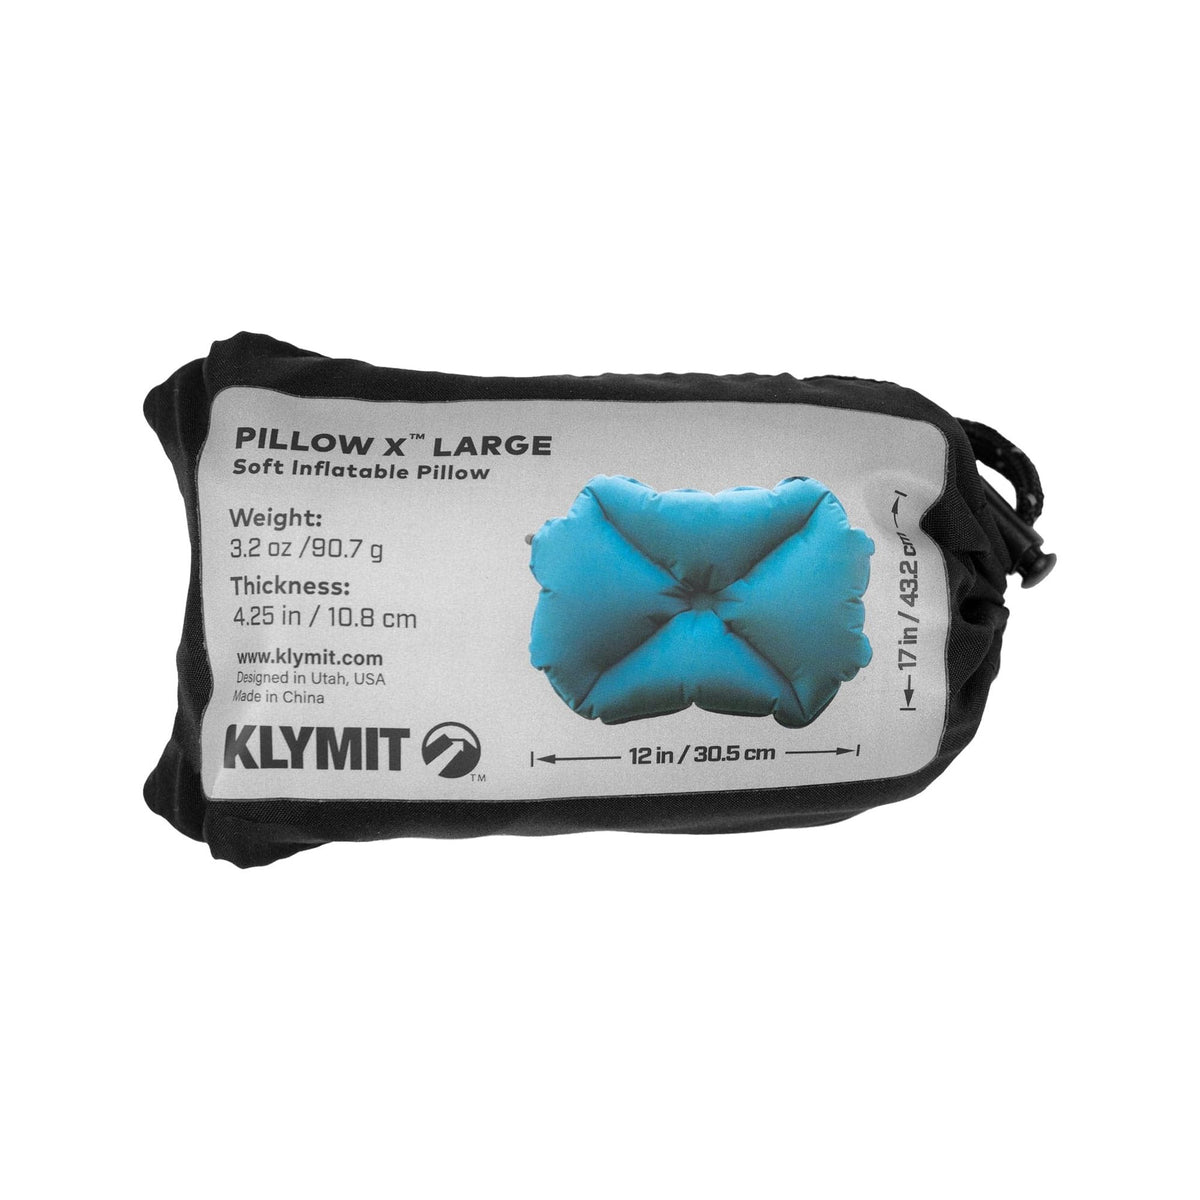 Klymit Pillow X Large by Klymit